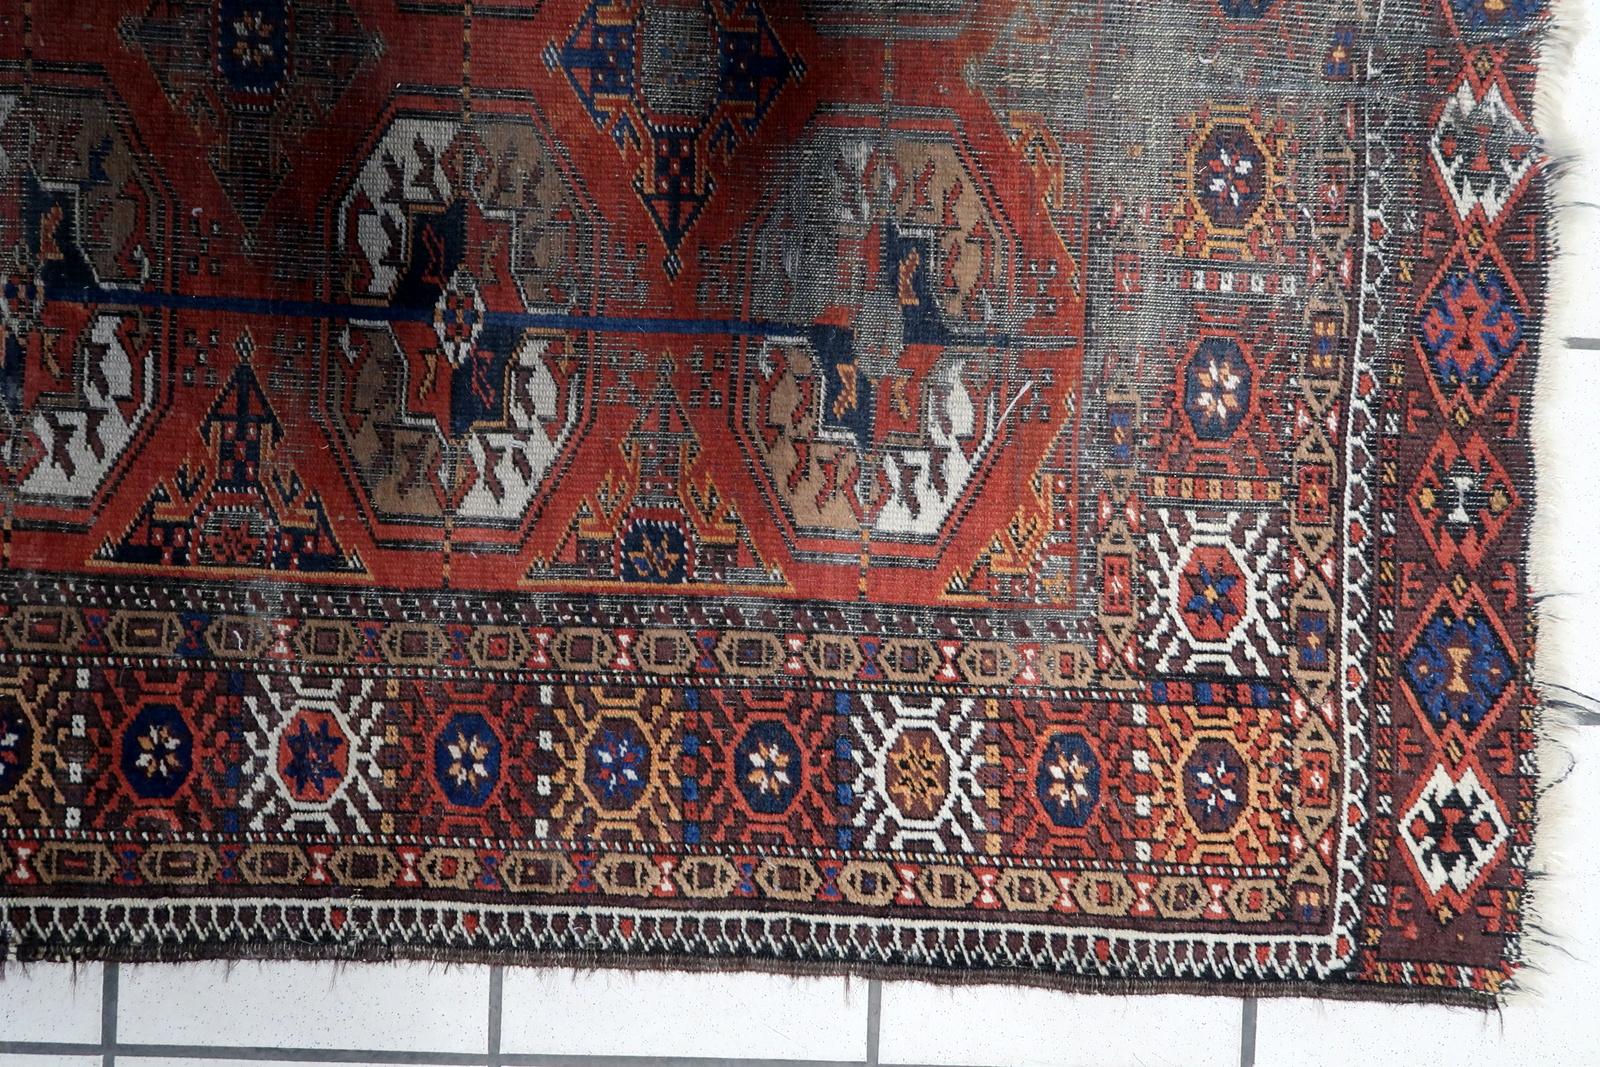 Voici notre tapis vintage afghan Baluch, fait main, datant des années 1920. Ce tapis exquis présente un design captivant et une fabrication impeccable qui ne manquera pas d'embellir n'importe quel espace.

Mesurant 3 pieds sur 5,3 pieds (93 cm x 164